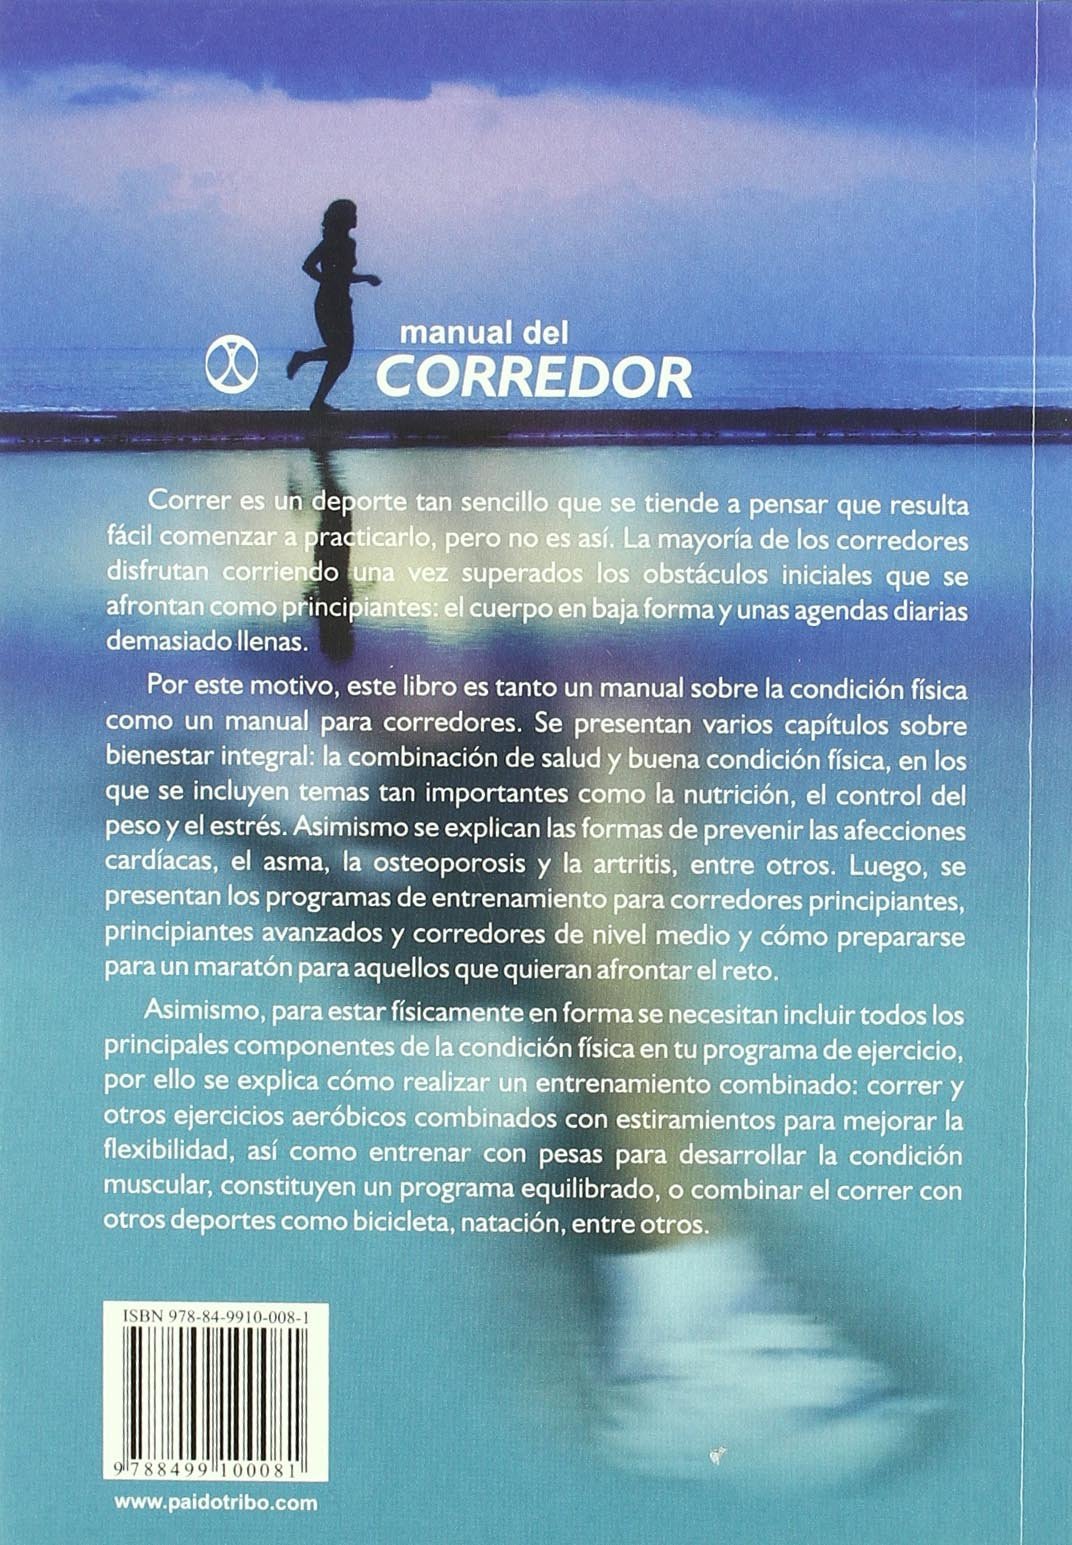 MANUAL DEL CORREDOR. Guía para corredores principiantes y de nivel intermedio - D'Autores